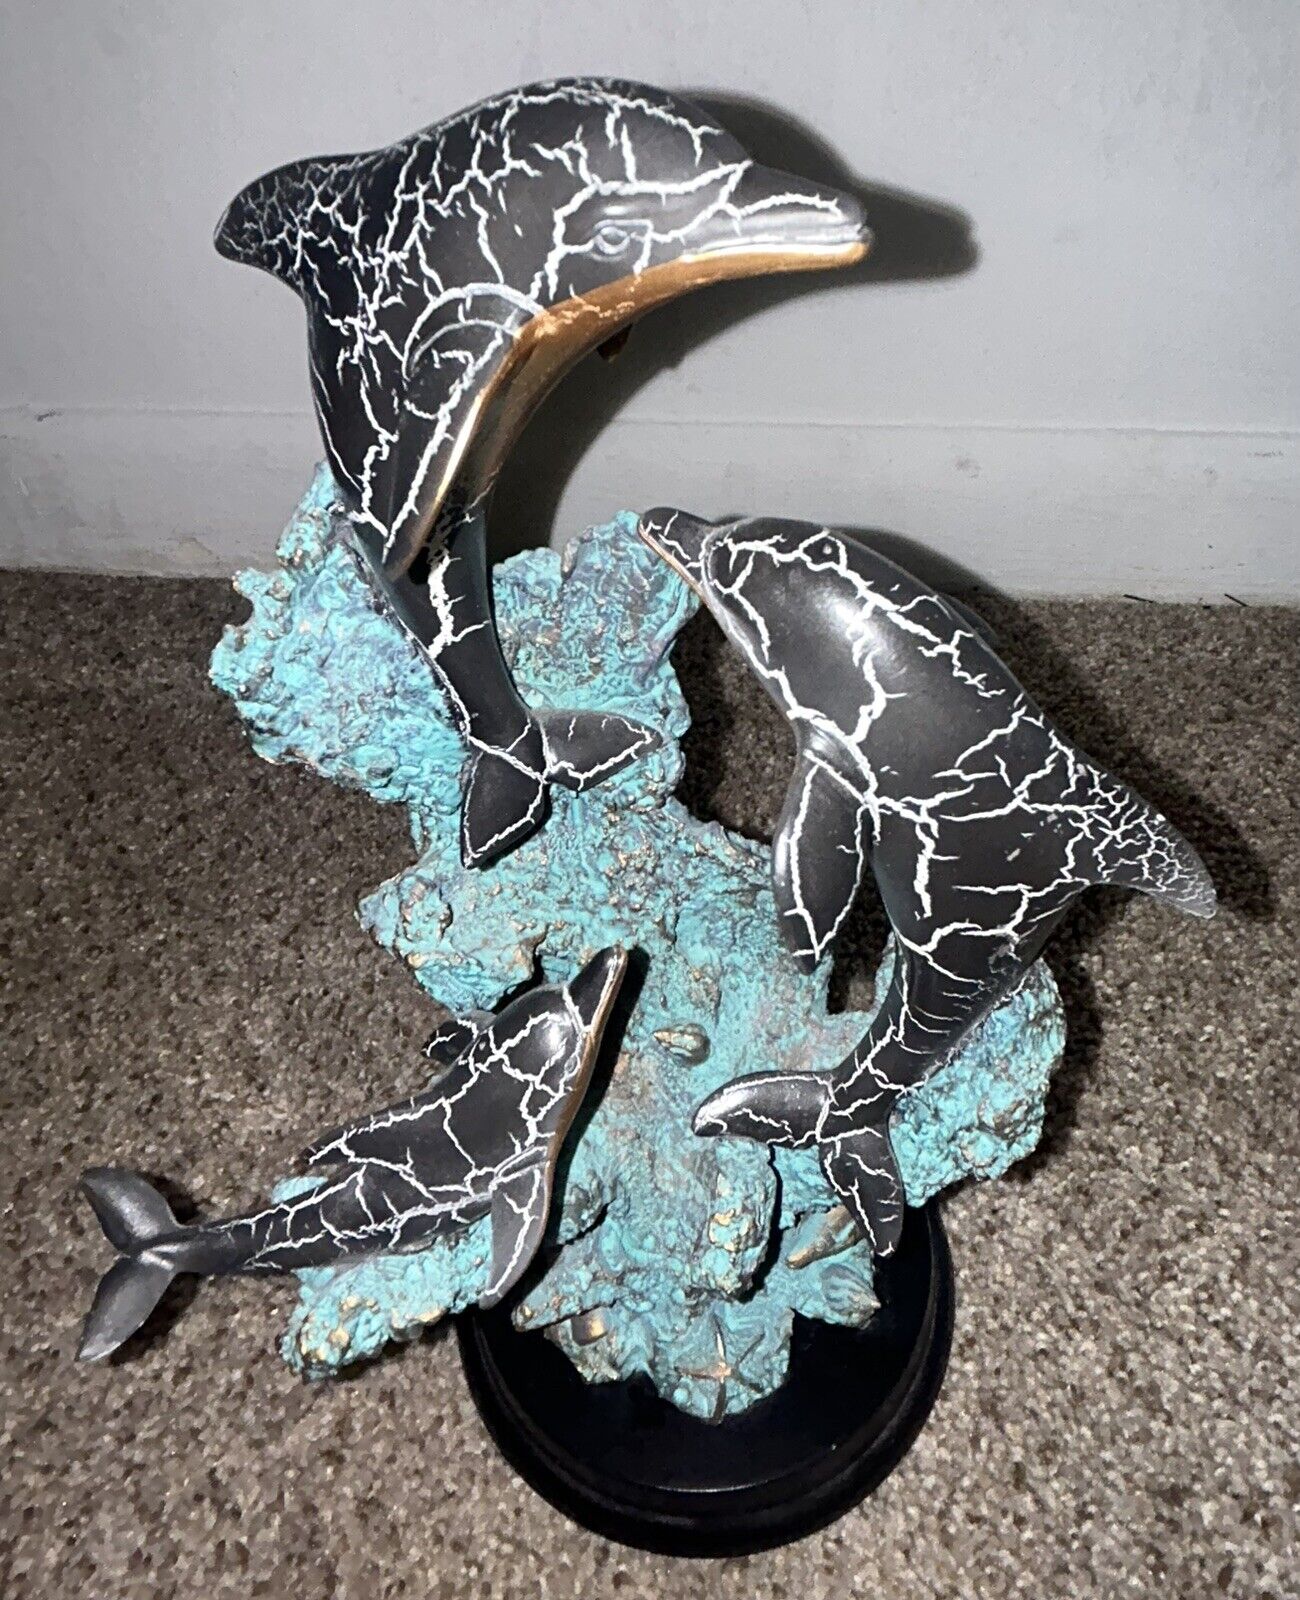 3 Dolphin Sculpture Figurine Statue